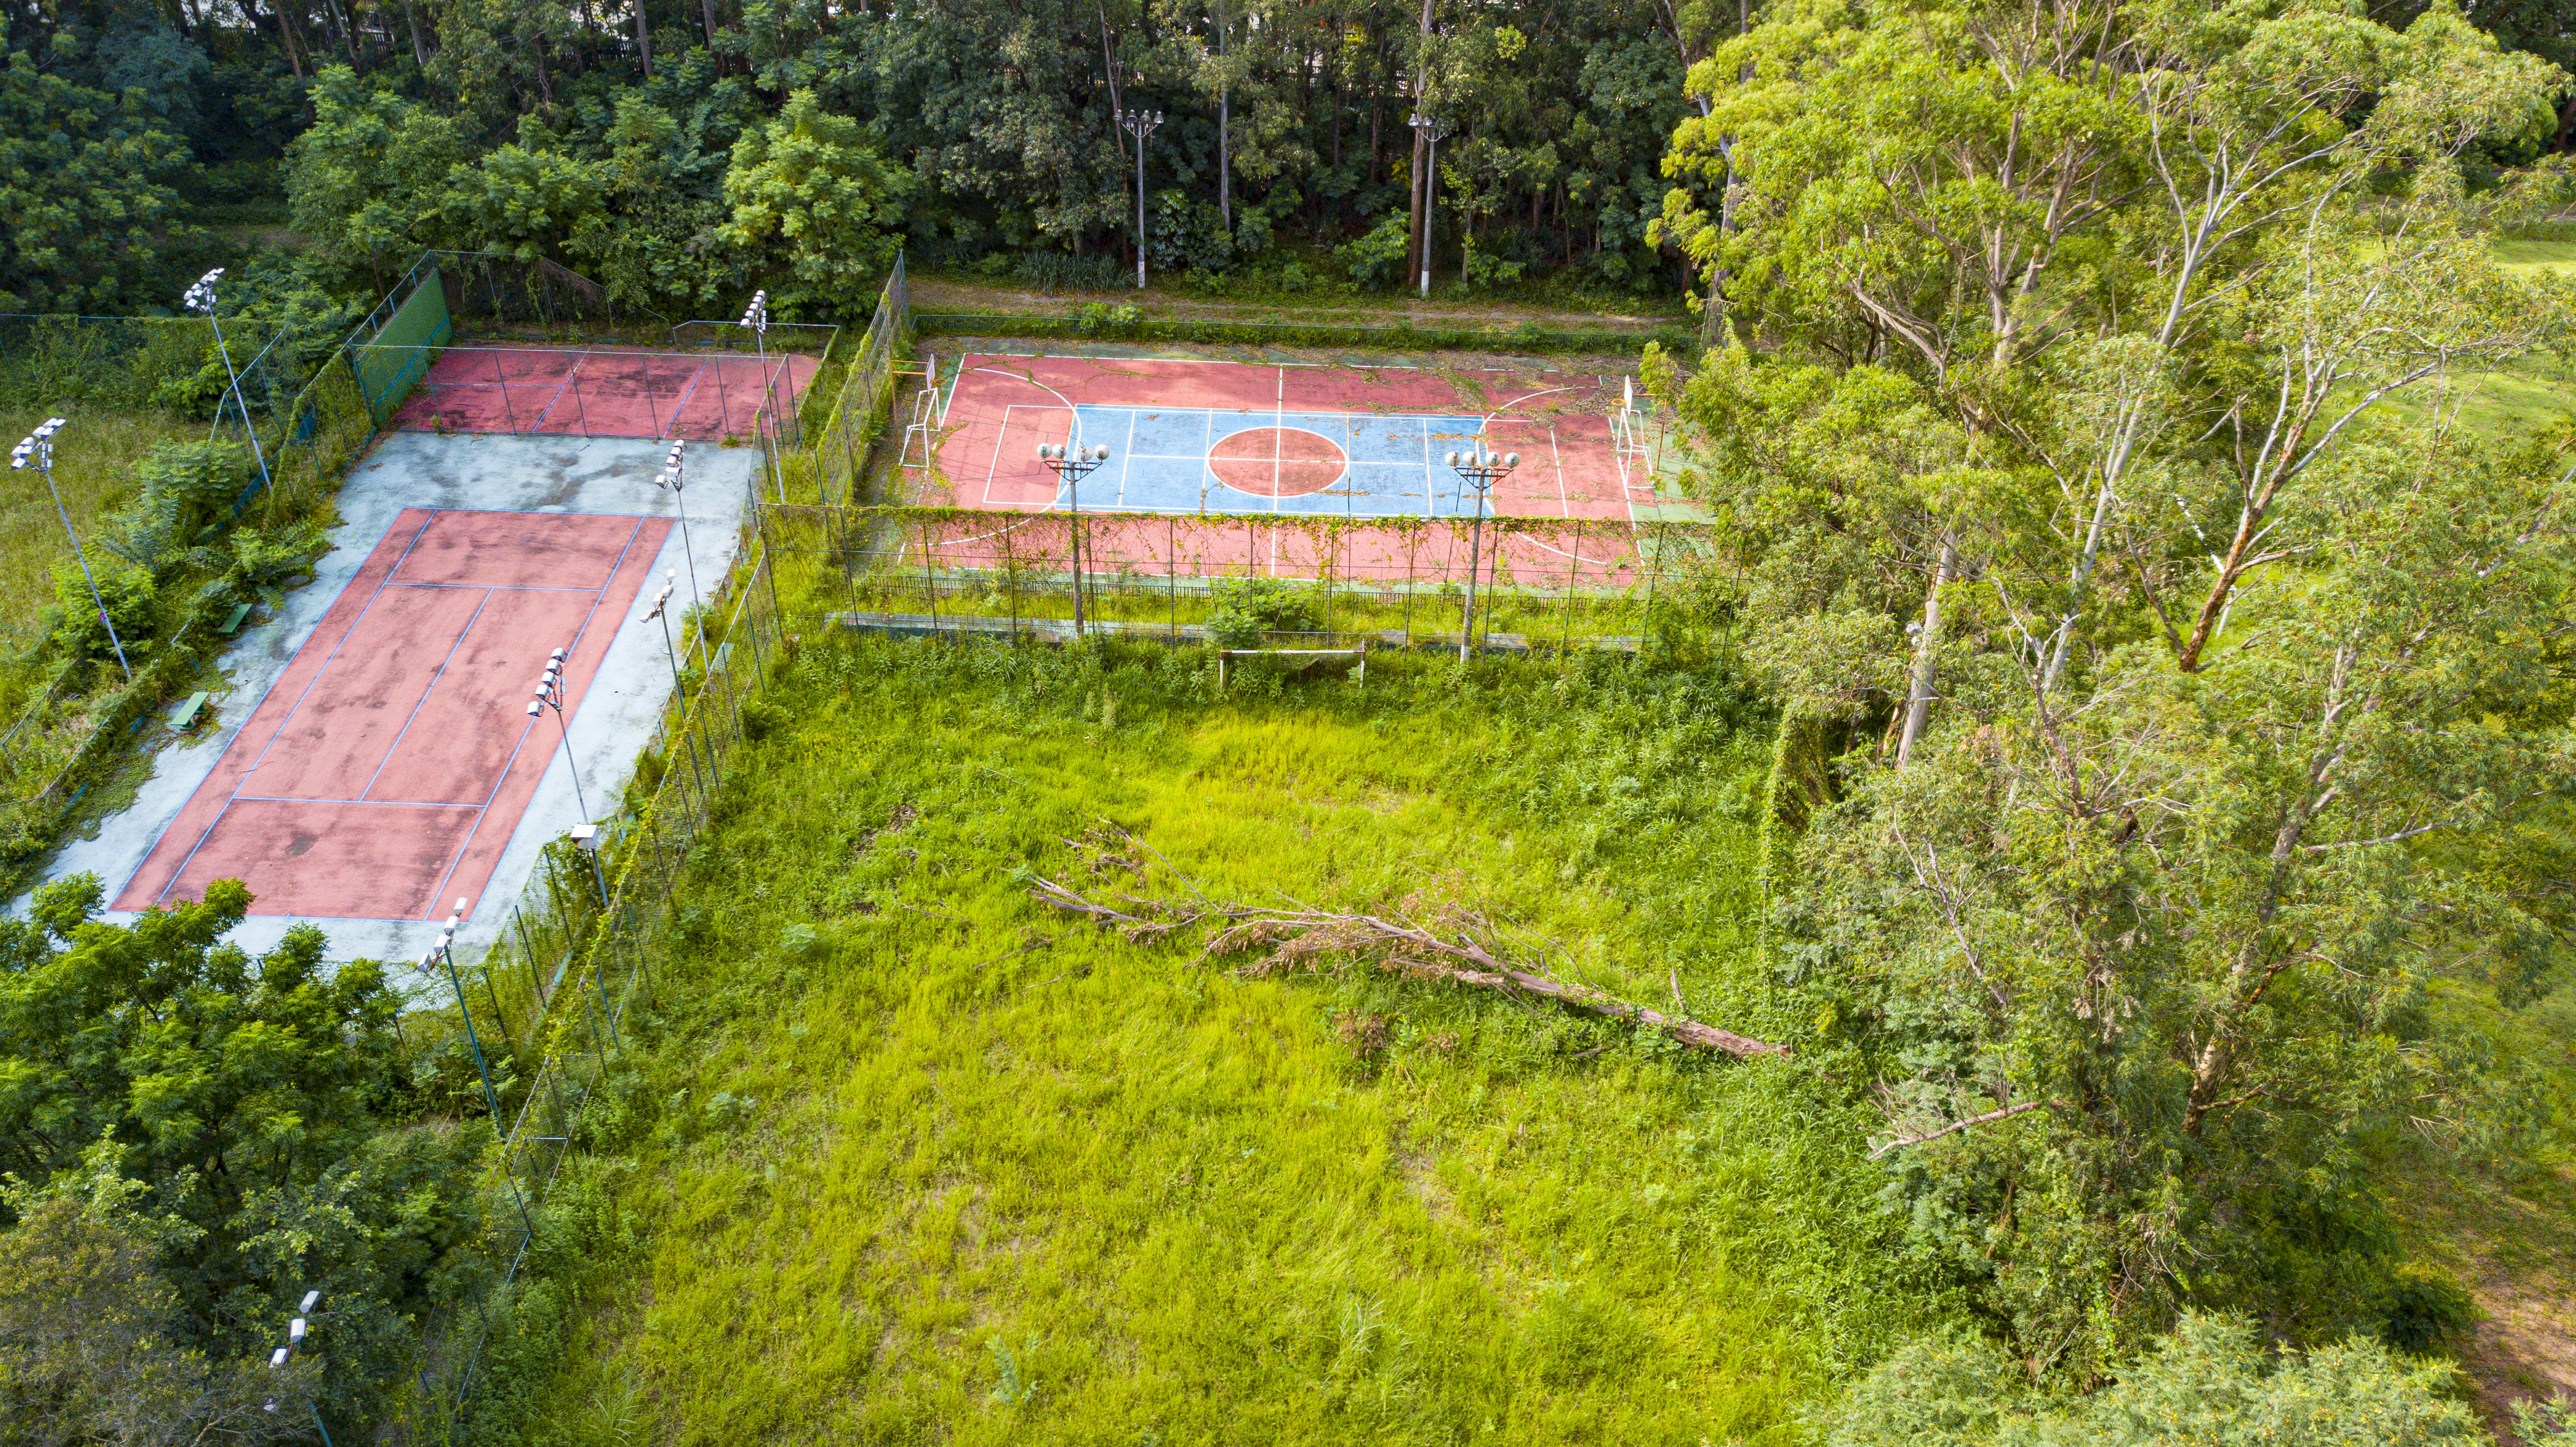 Imagem mostra vista aérea de campo de futebol tomado por mato, com árvore caída no meio do gramado, e uma quadra poliesportiva com marcações quase sumindo do chão